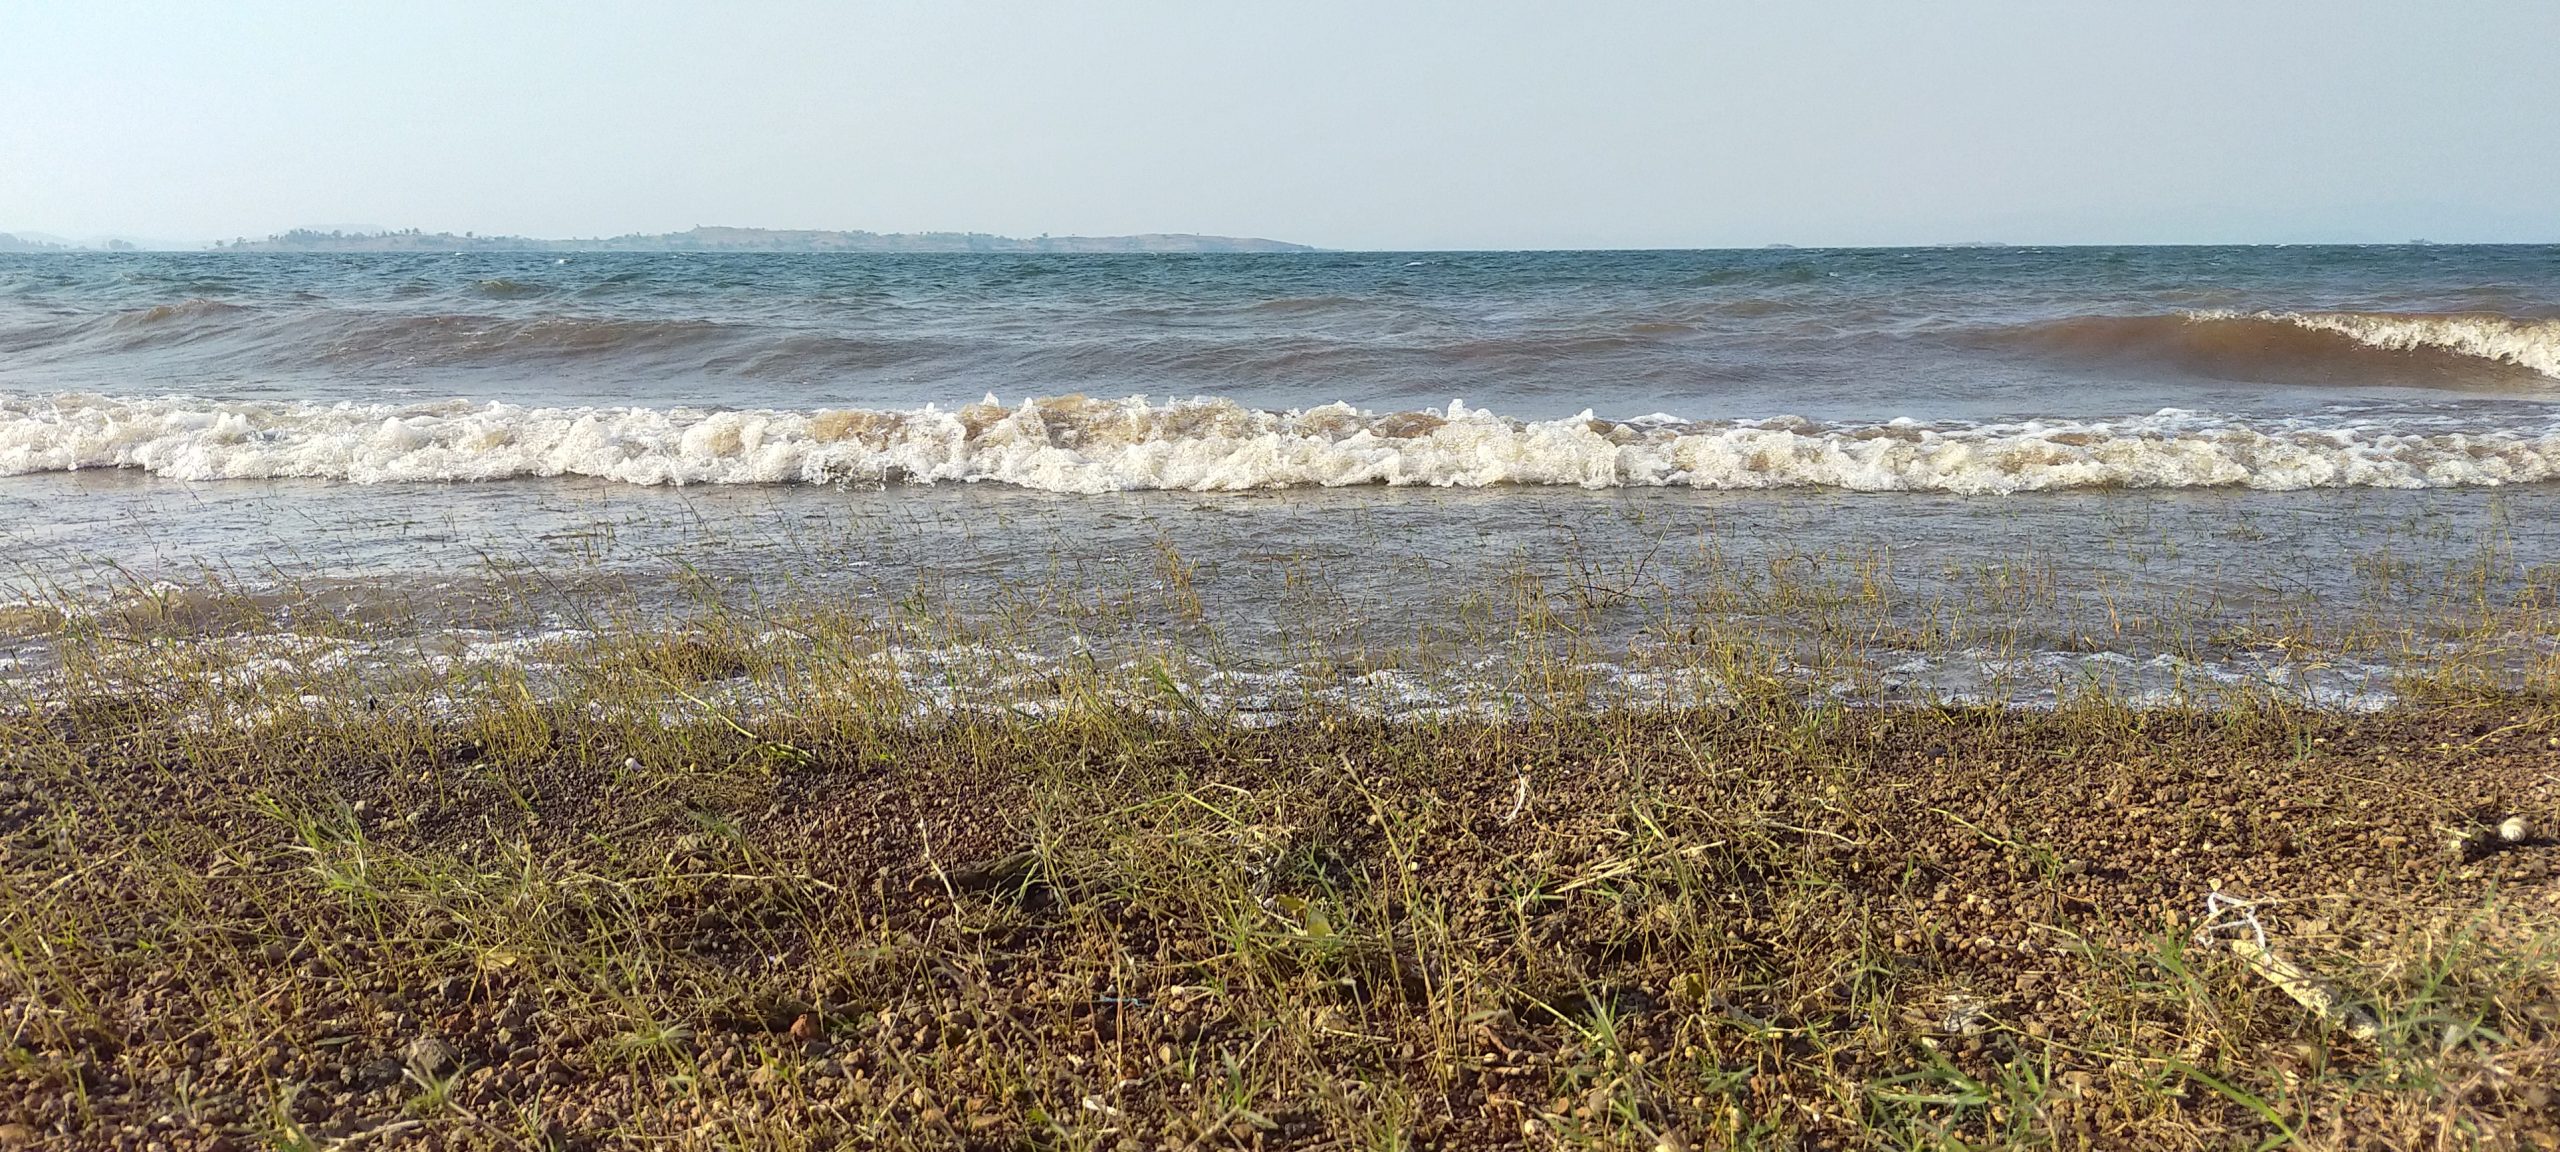 Water waves reaching shore